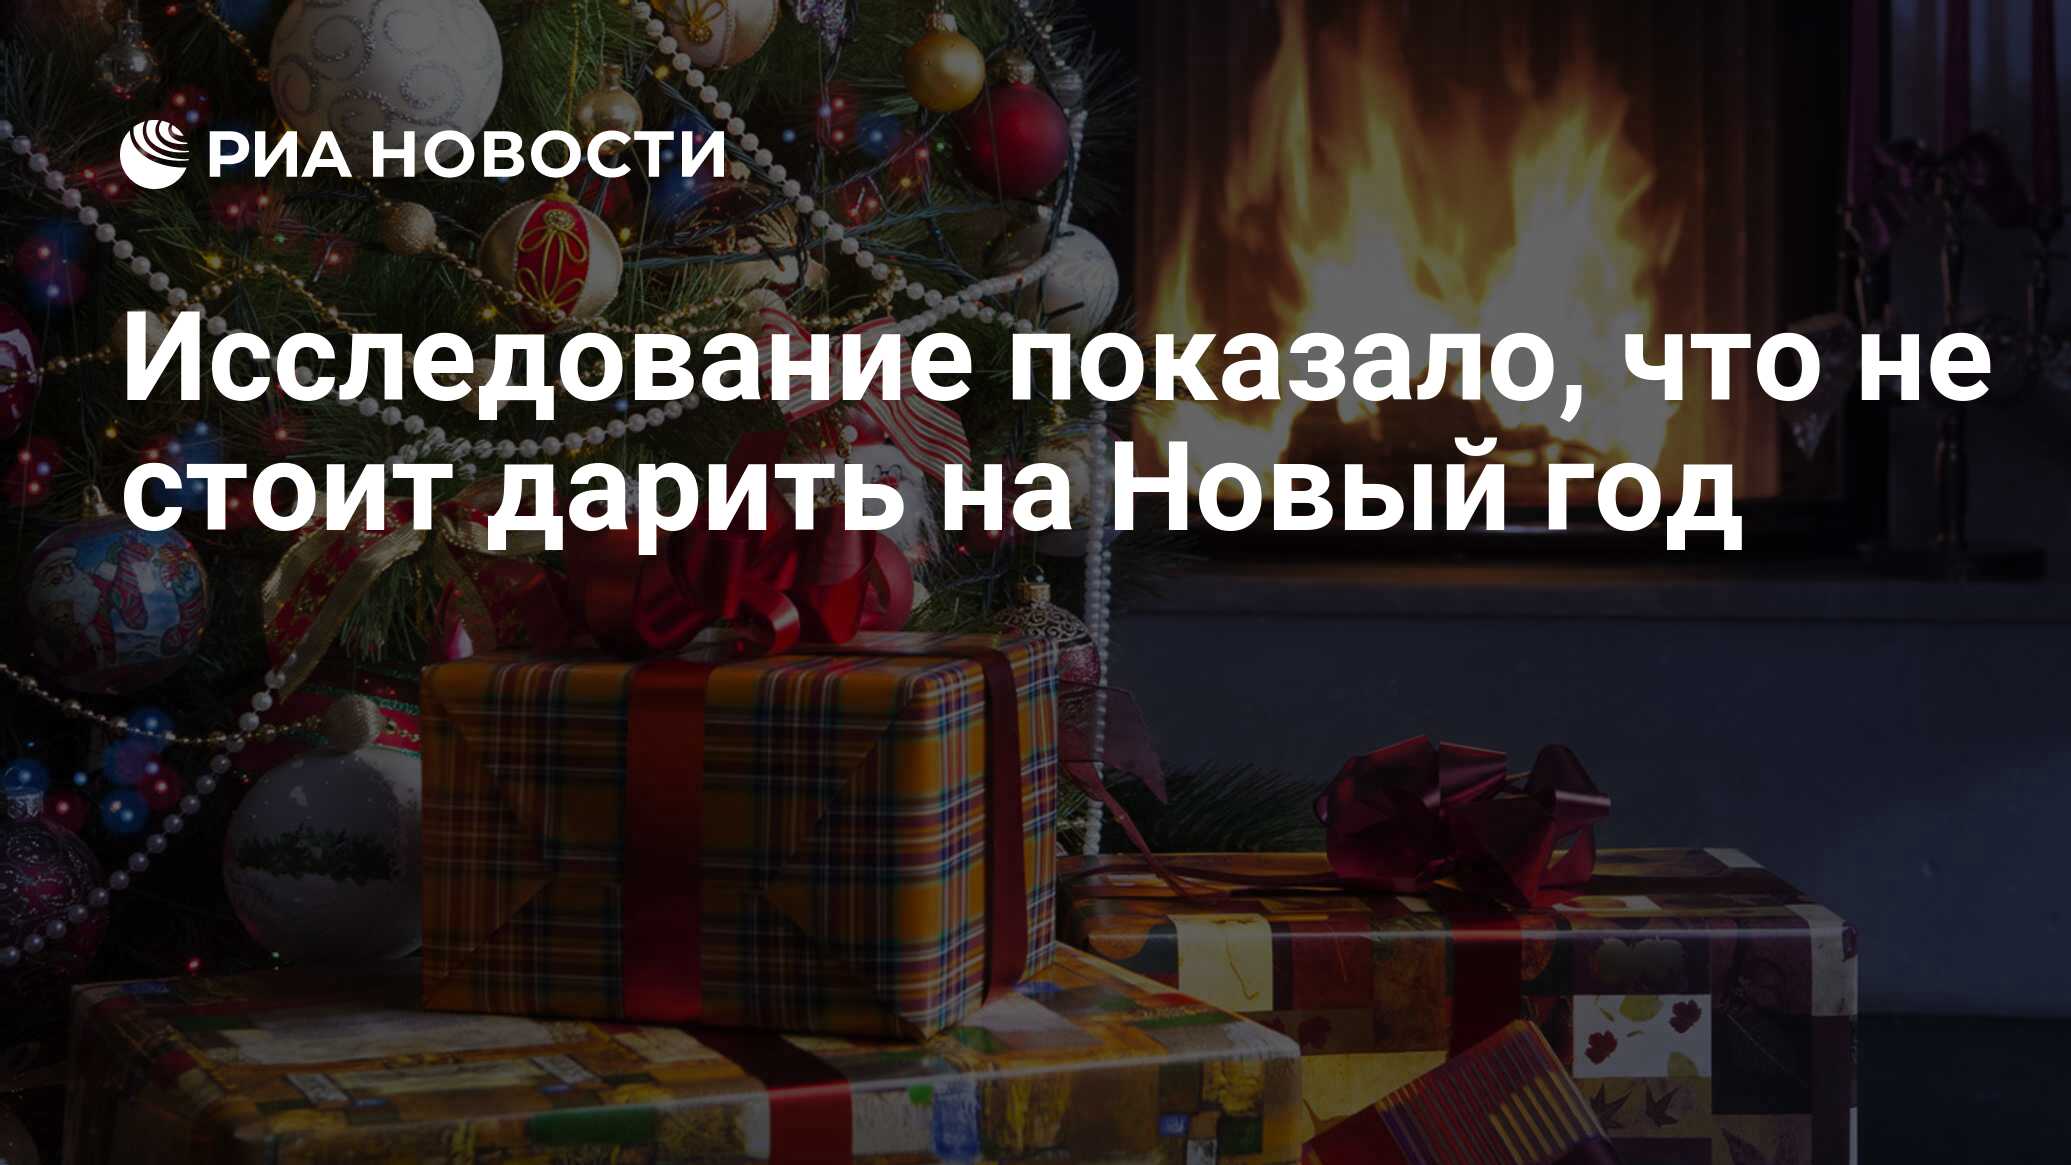 Подарки дарят 31 декабря или 1 января. Самые популярные новогодние товары на маркетплейсах. Большинство россиян решили встретить новый год дома. Опрос кто на работе кто готовится к новому году. А вы начали подготовку к новому году опрос.